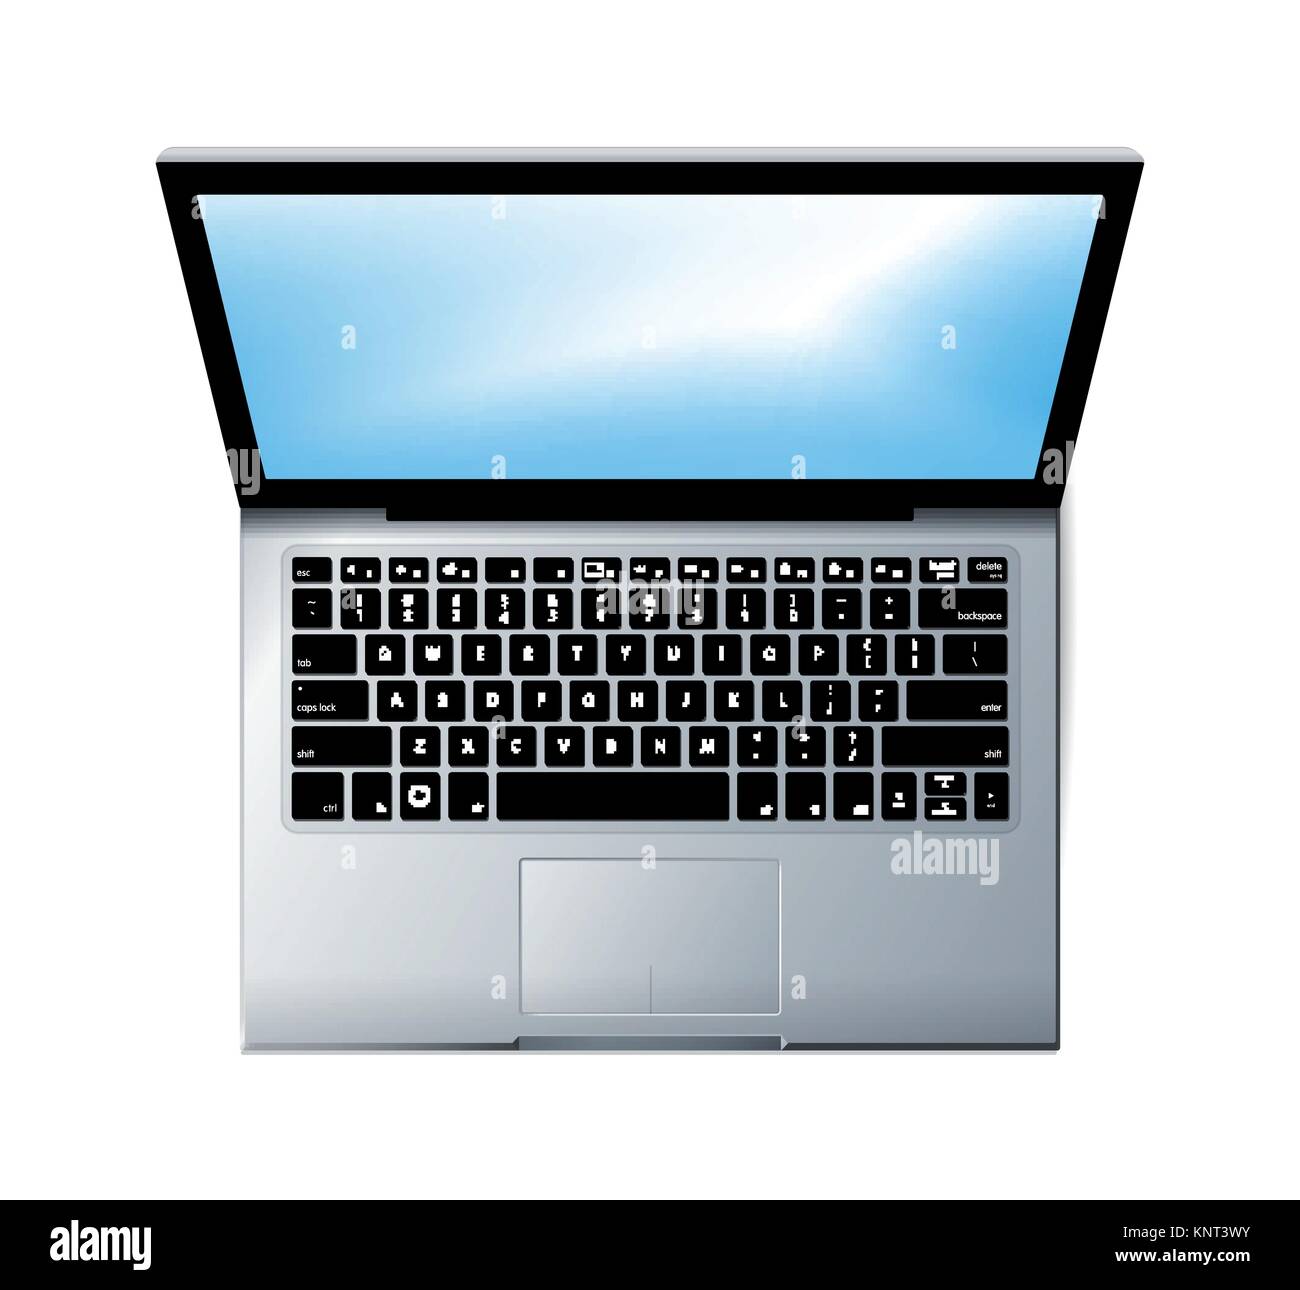 Concept d'ordinateur portable - Vue de dessus - illustration stock Illustration de Vecteur